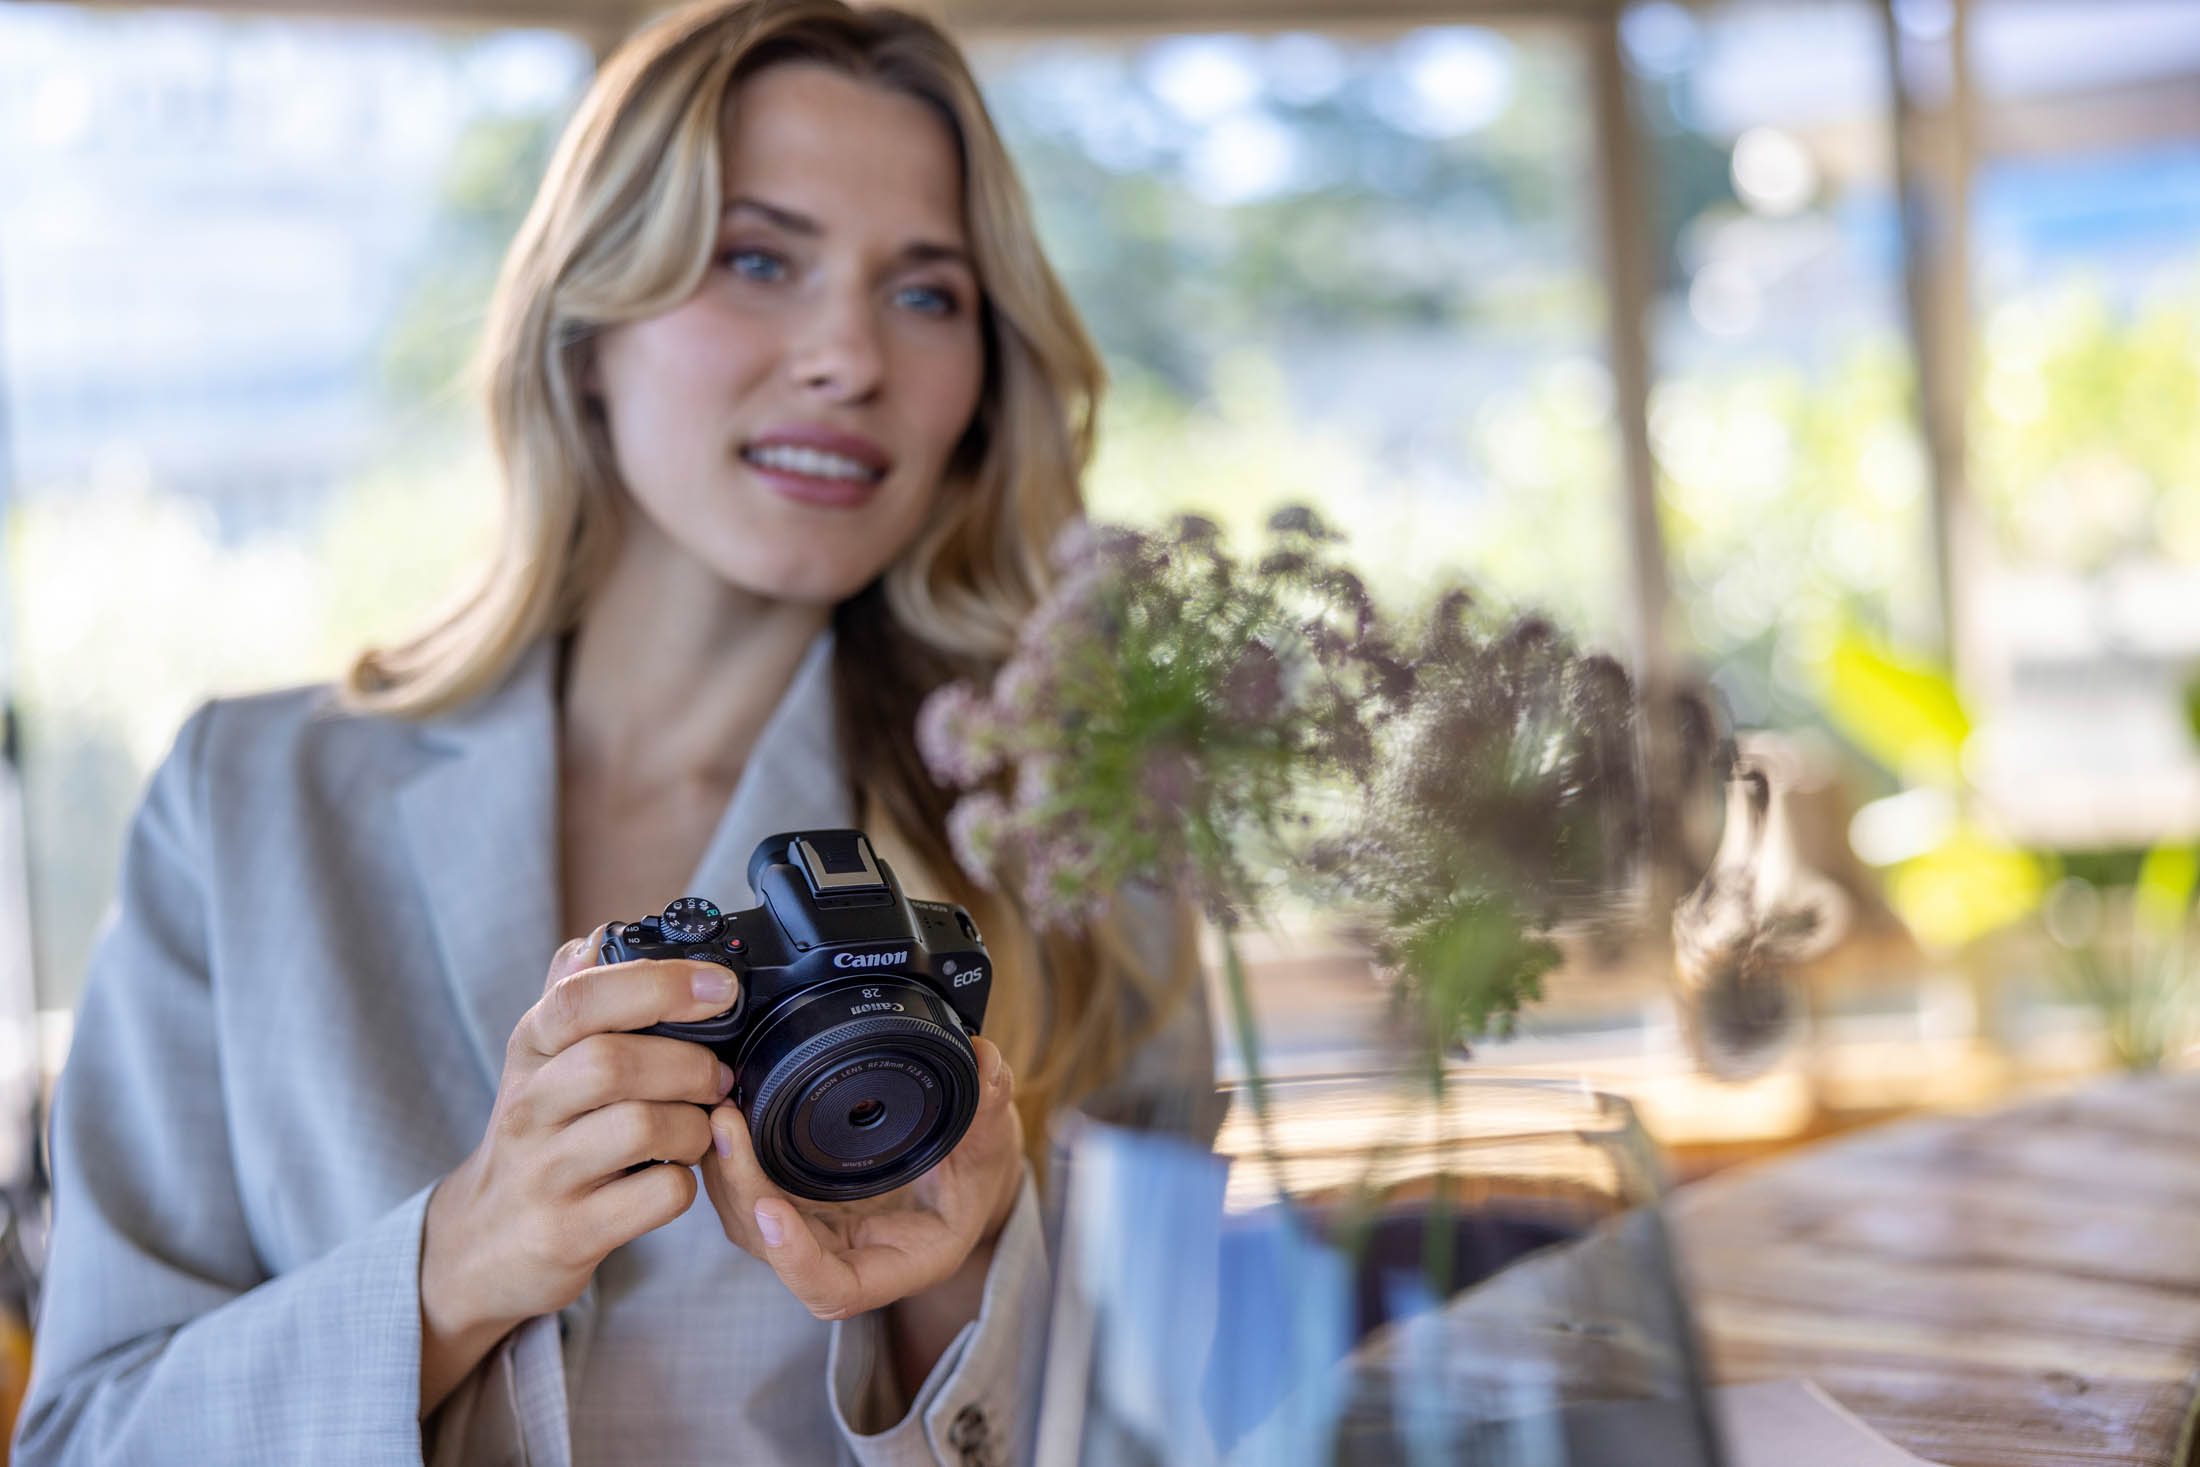 Eine Frau hält eine Canon-Kamera und fokussiert intensiv auf ihr Motiv. Im unscharfen Hintergrund ist ein helles, luftiges Café mit Pflanzen zu sehen. Sie scheint sich mit Fotografieren zu beschäftigen. © Fotografie Tomas Rodriguez